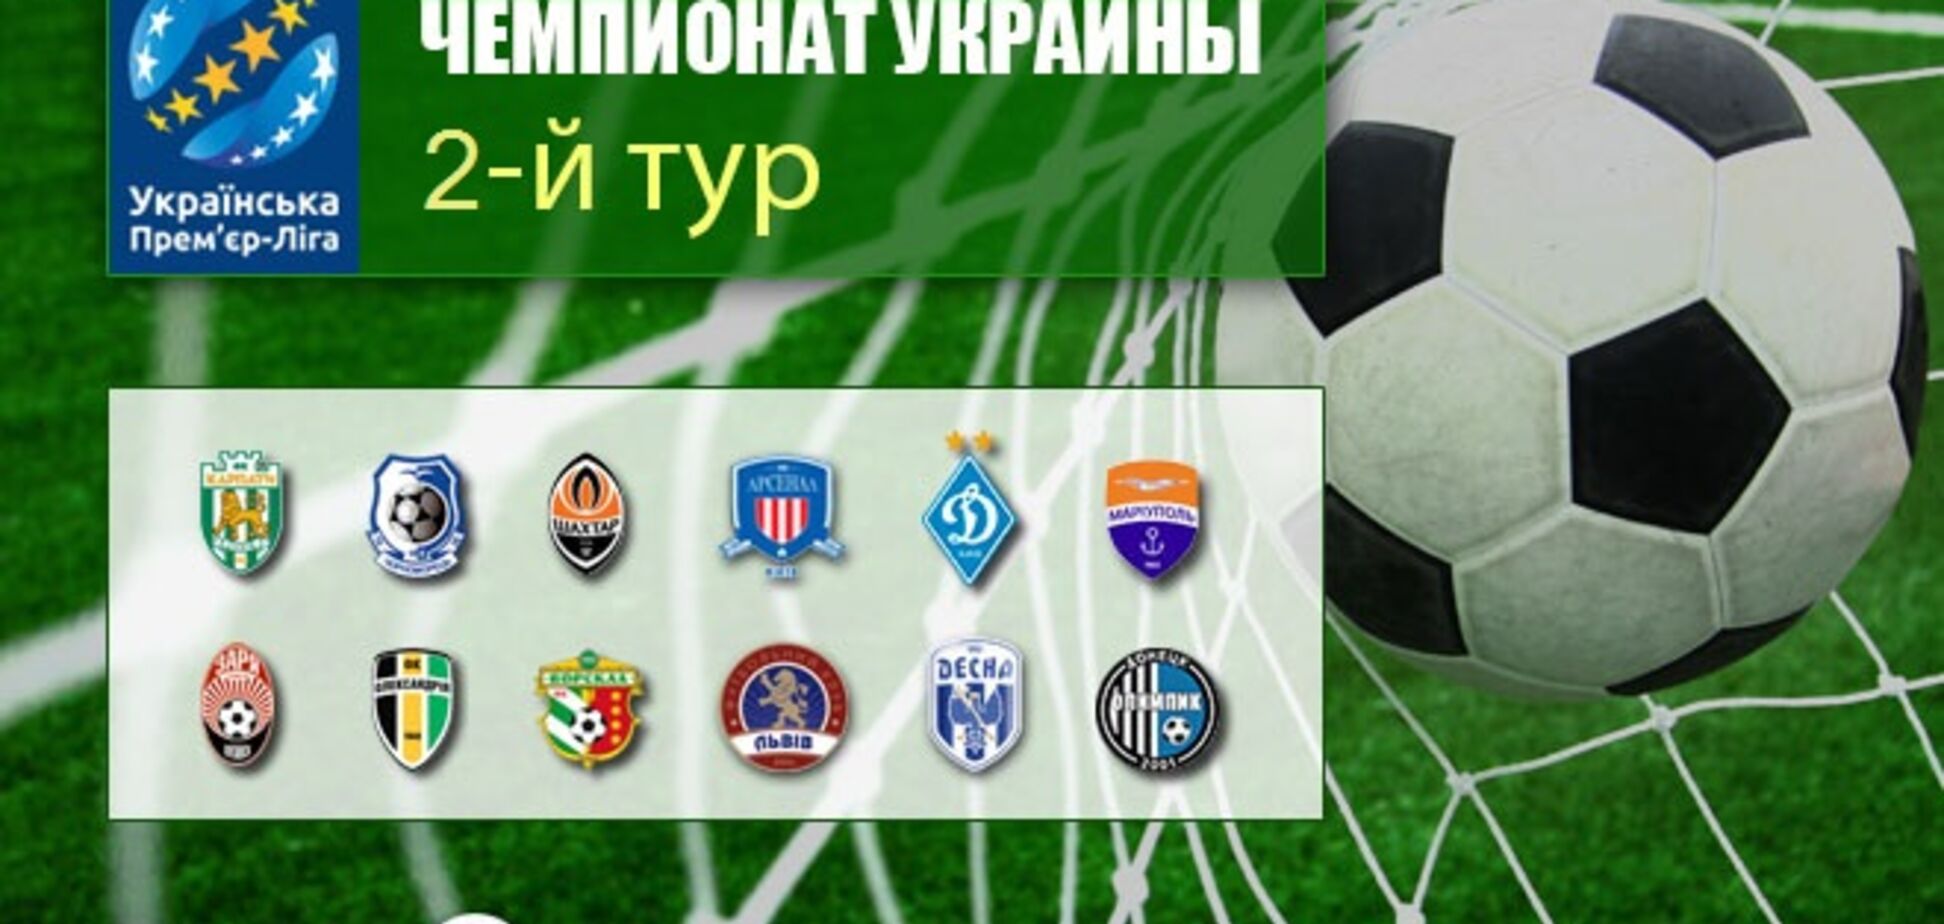 2-й тур чемпіонату України з футболу: результати, огляди, таблиця